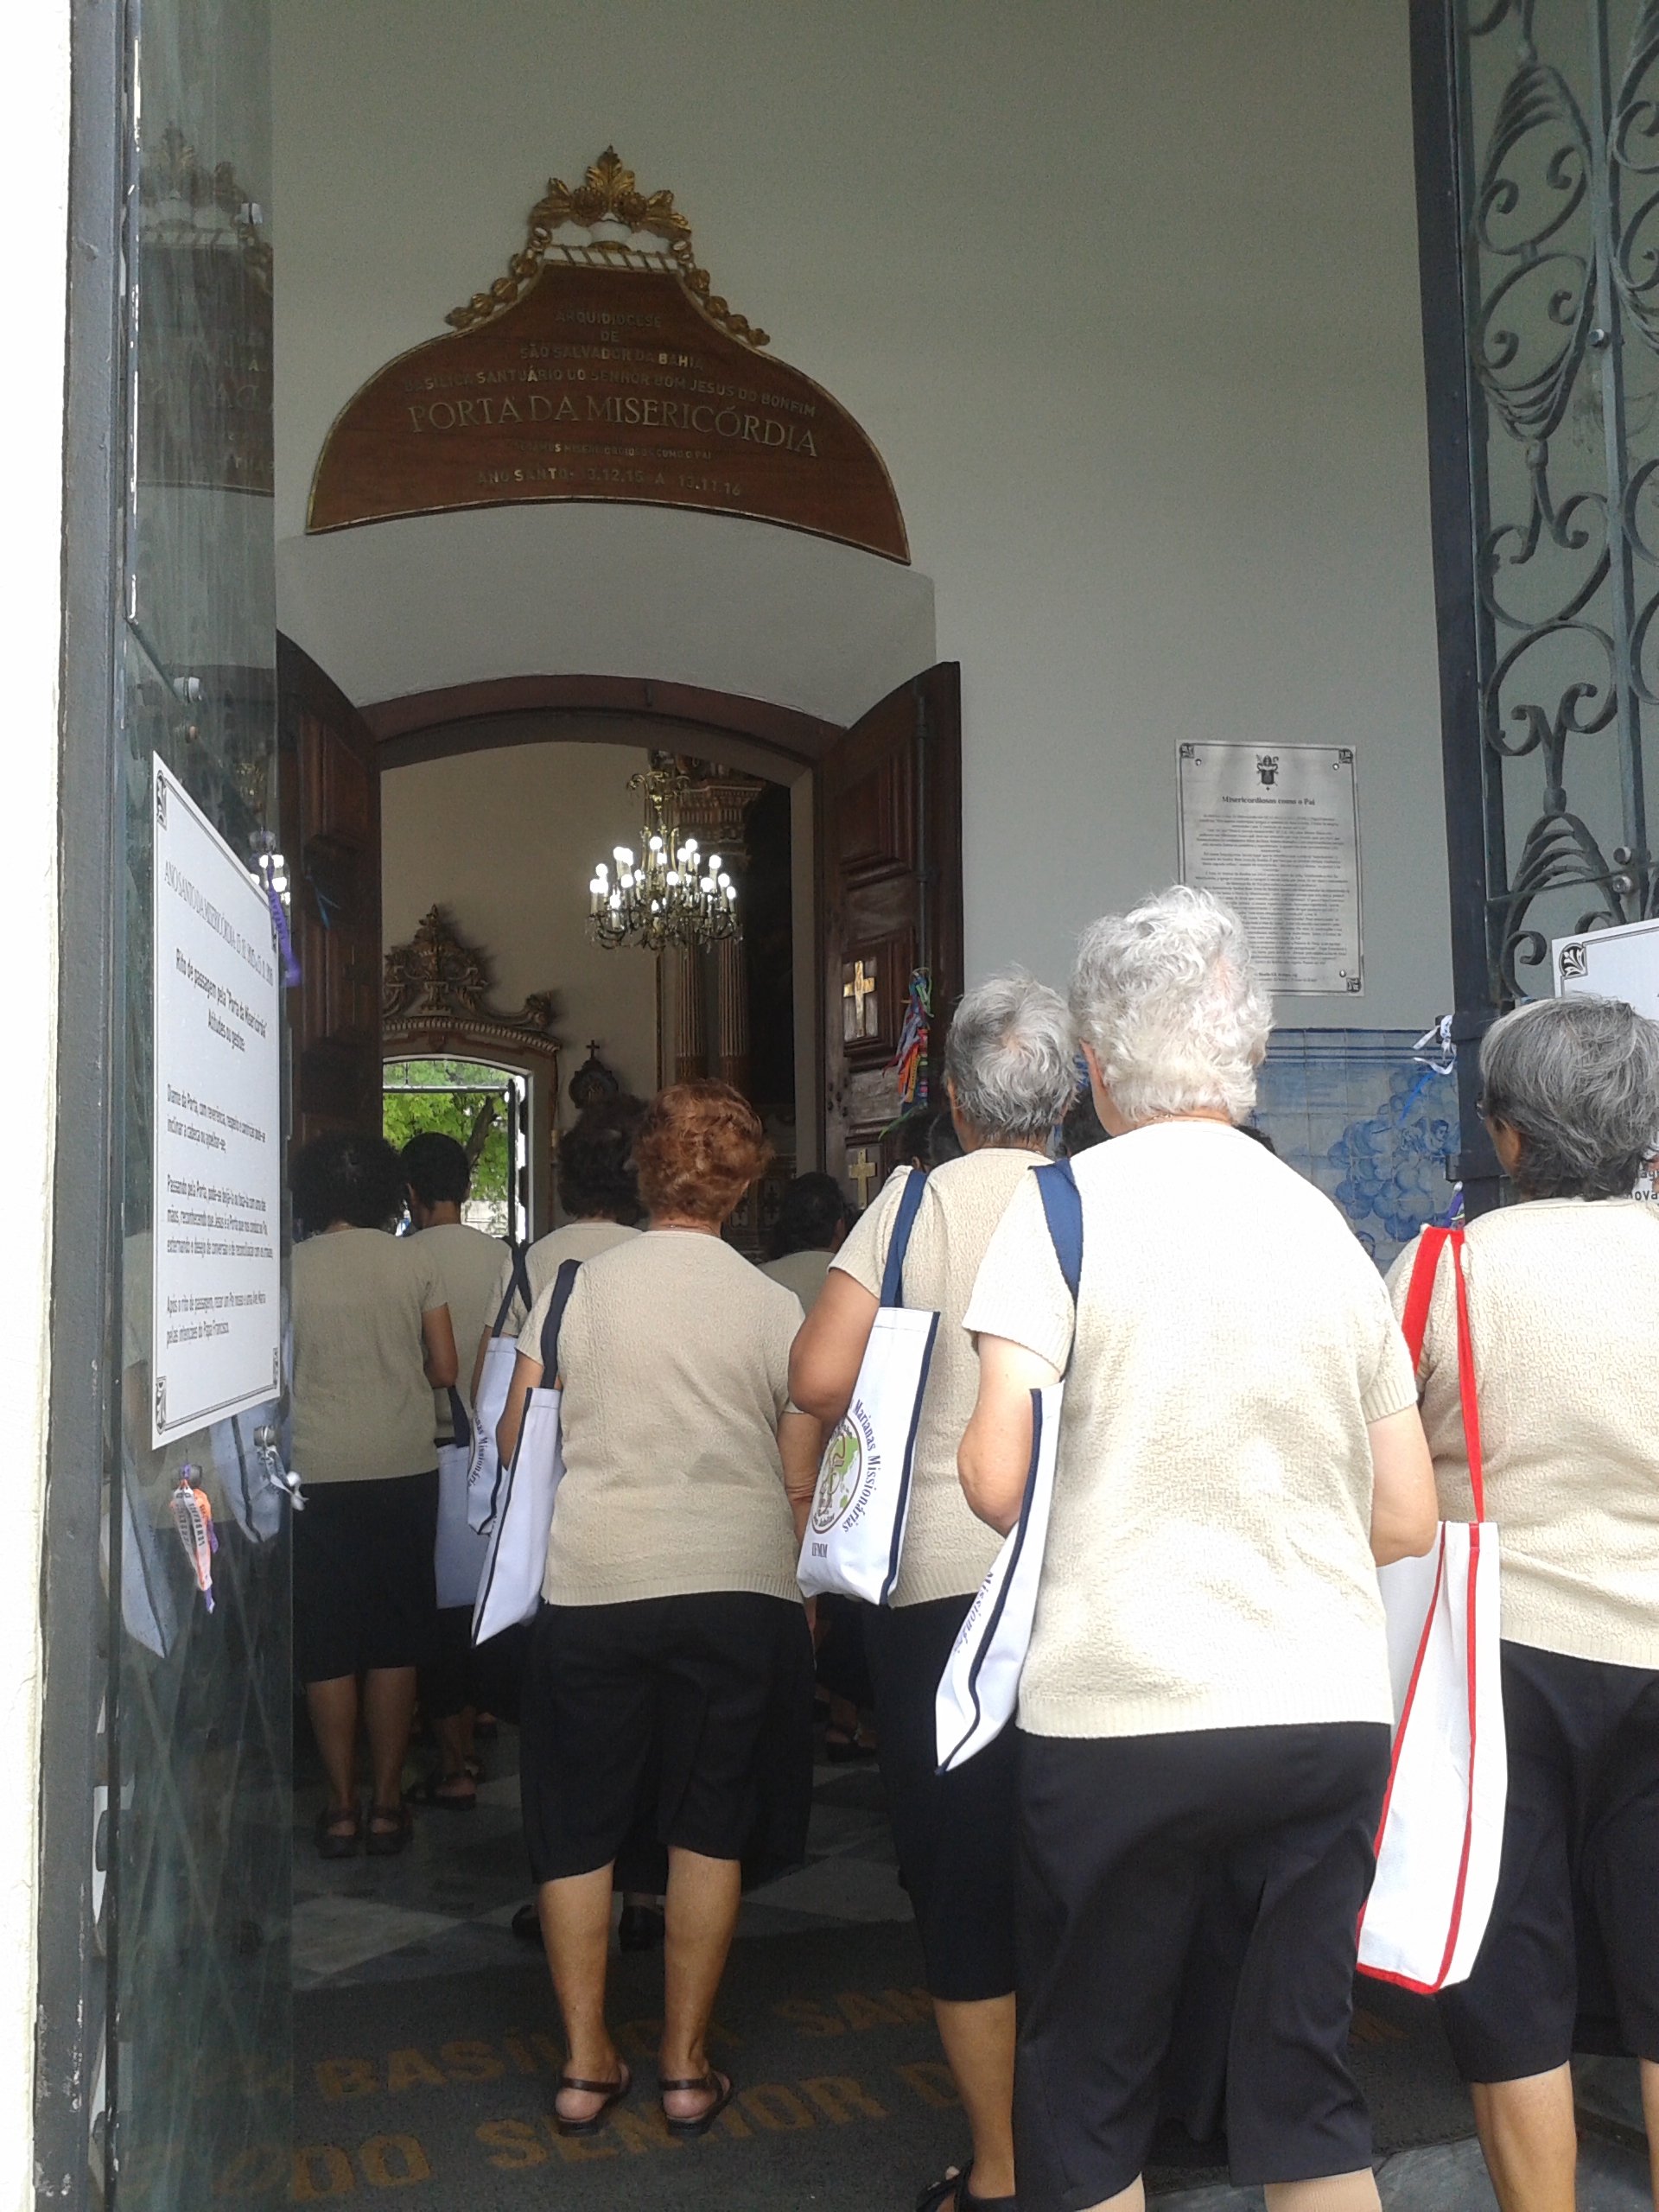 Irms Franciscanas Marianas Missionrias passam pela Porta da Misericrdia